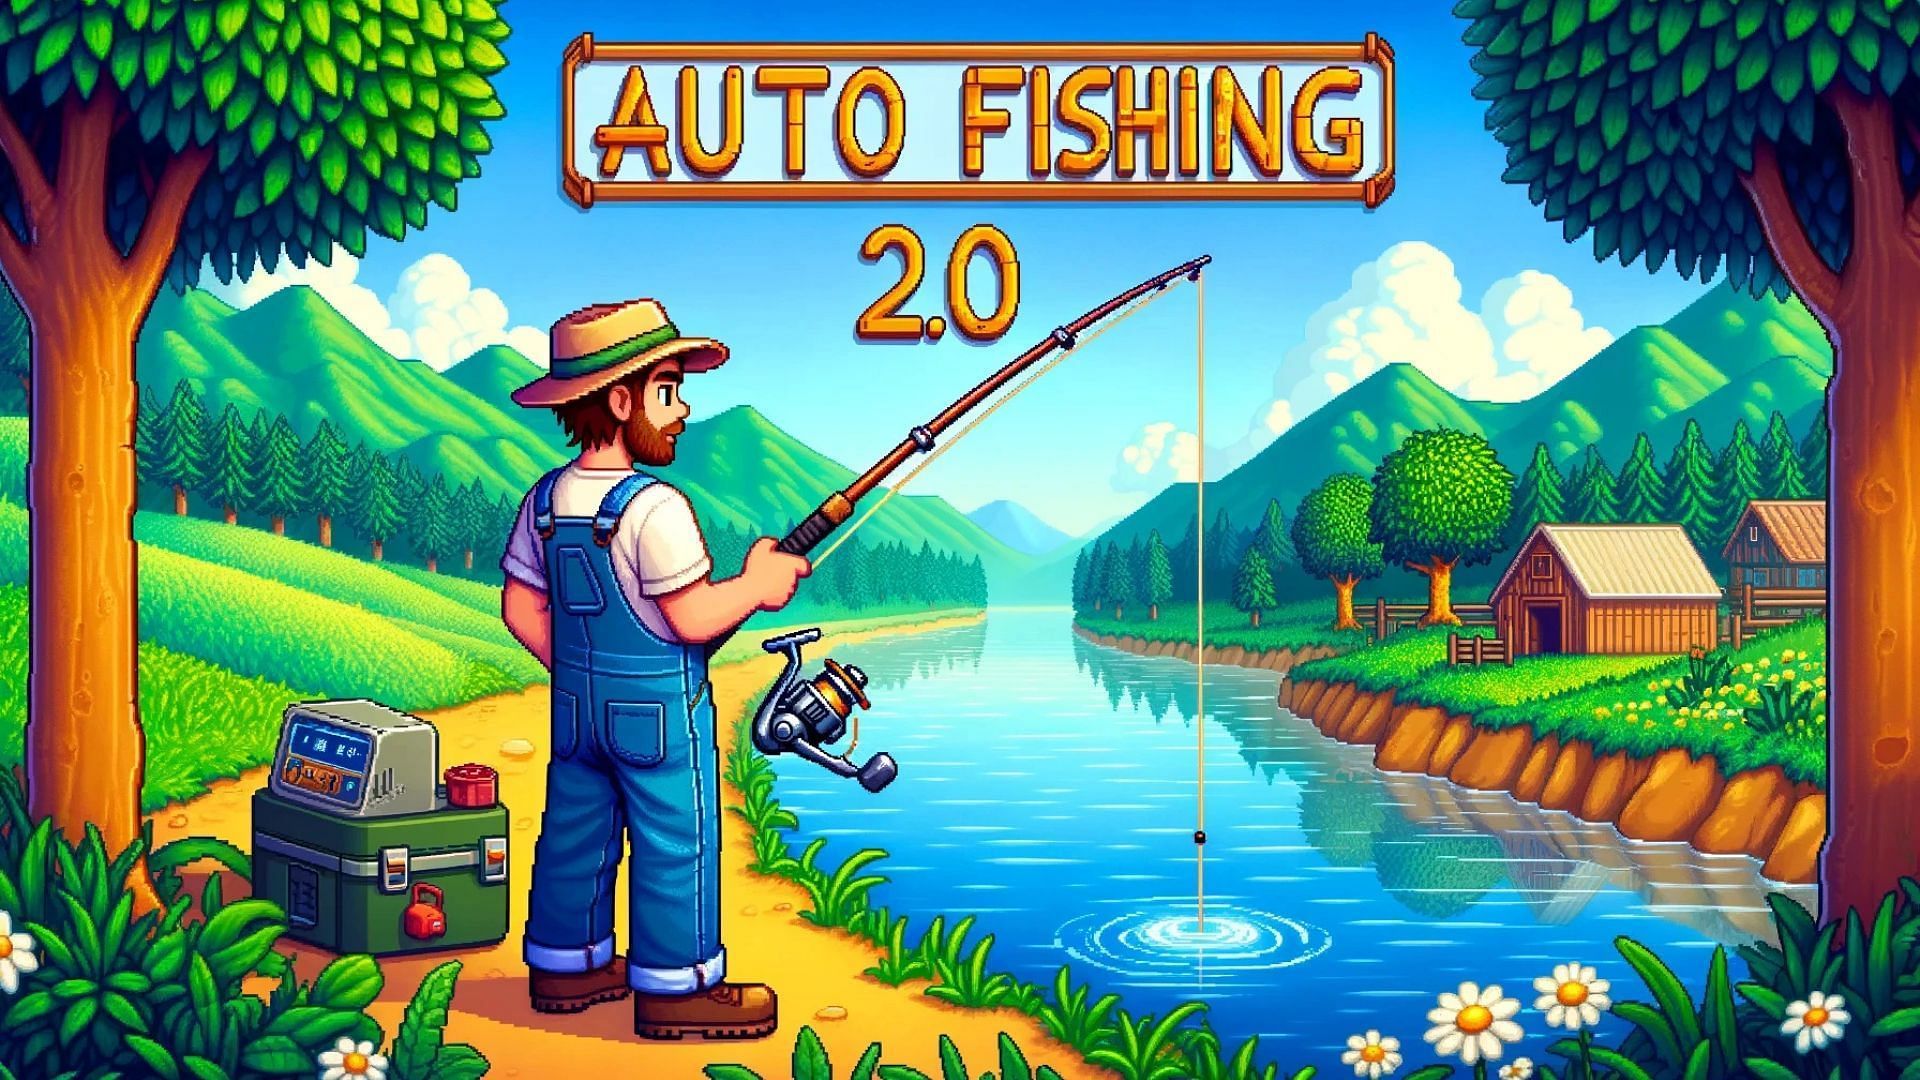 Auto Fishing 2.0 mod (Image via ConcernedApe II and Tibsz)